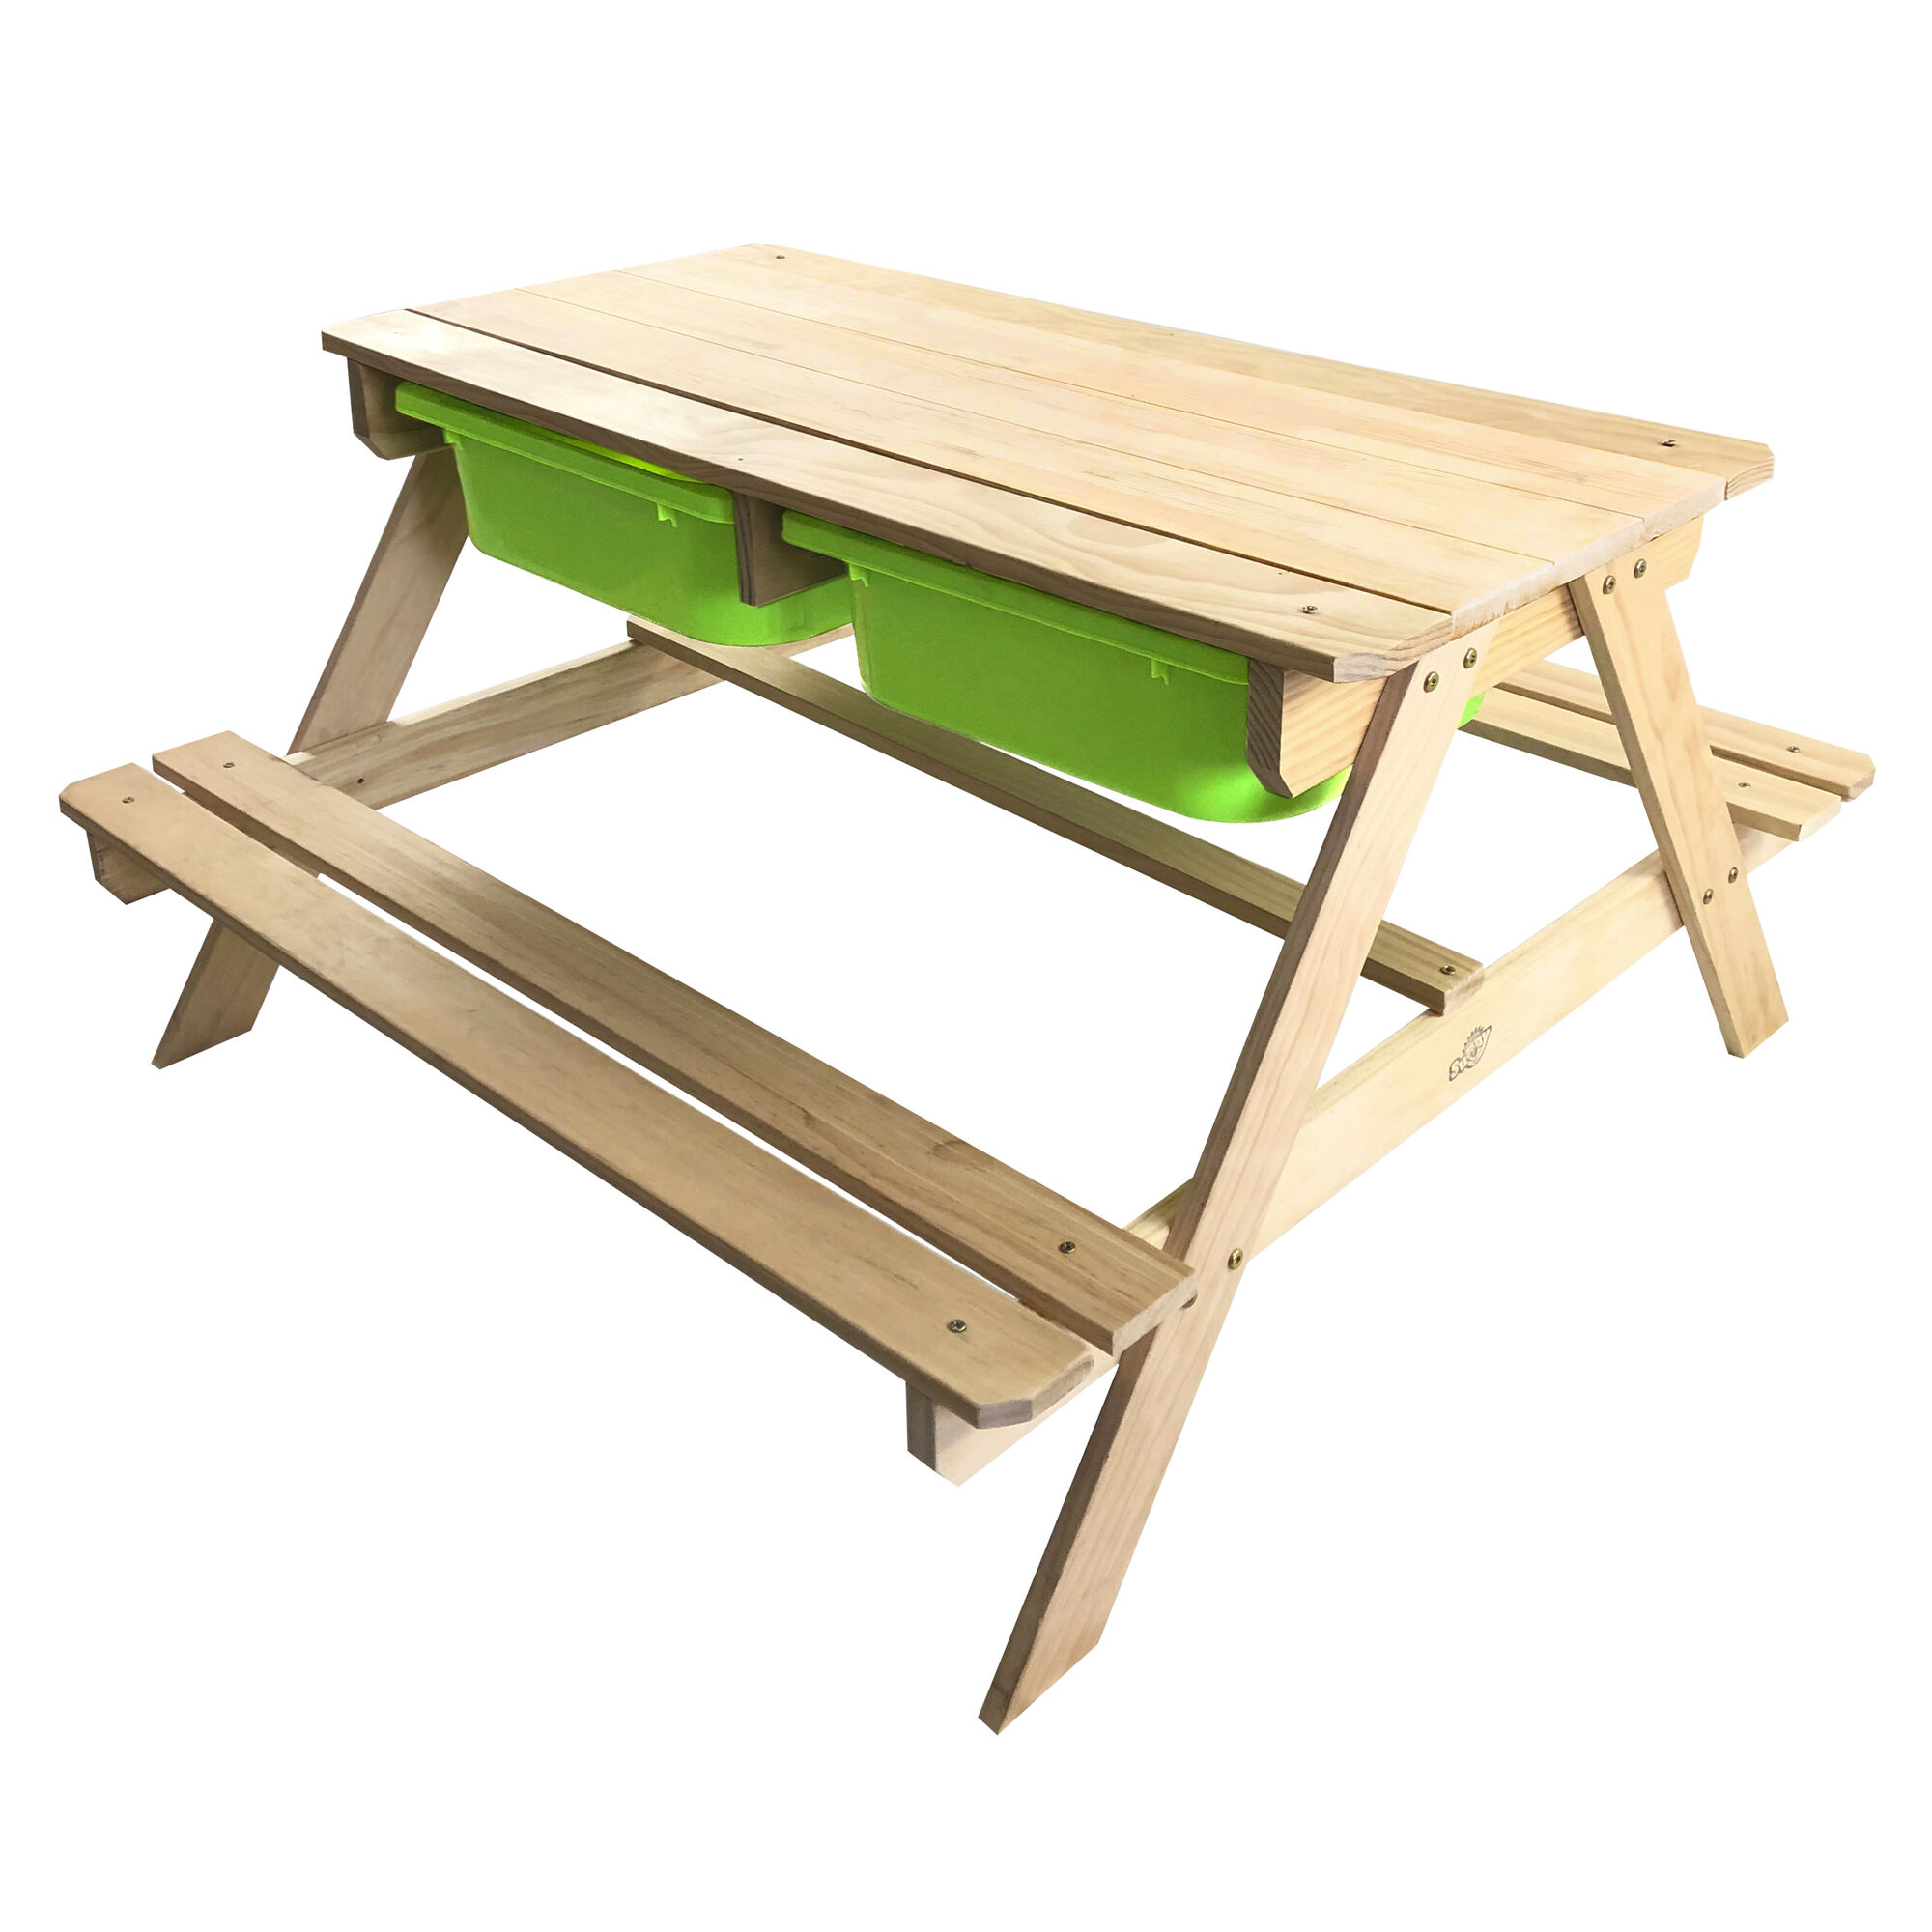 Sunny Dual Top 2.0 Sand und Wasser Picknicktisch - Mit Kreidetafel und grünen Behältern